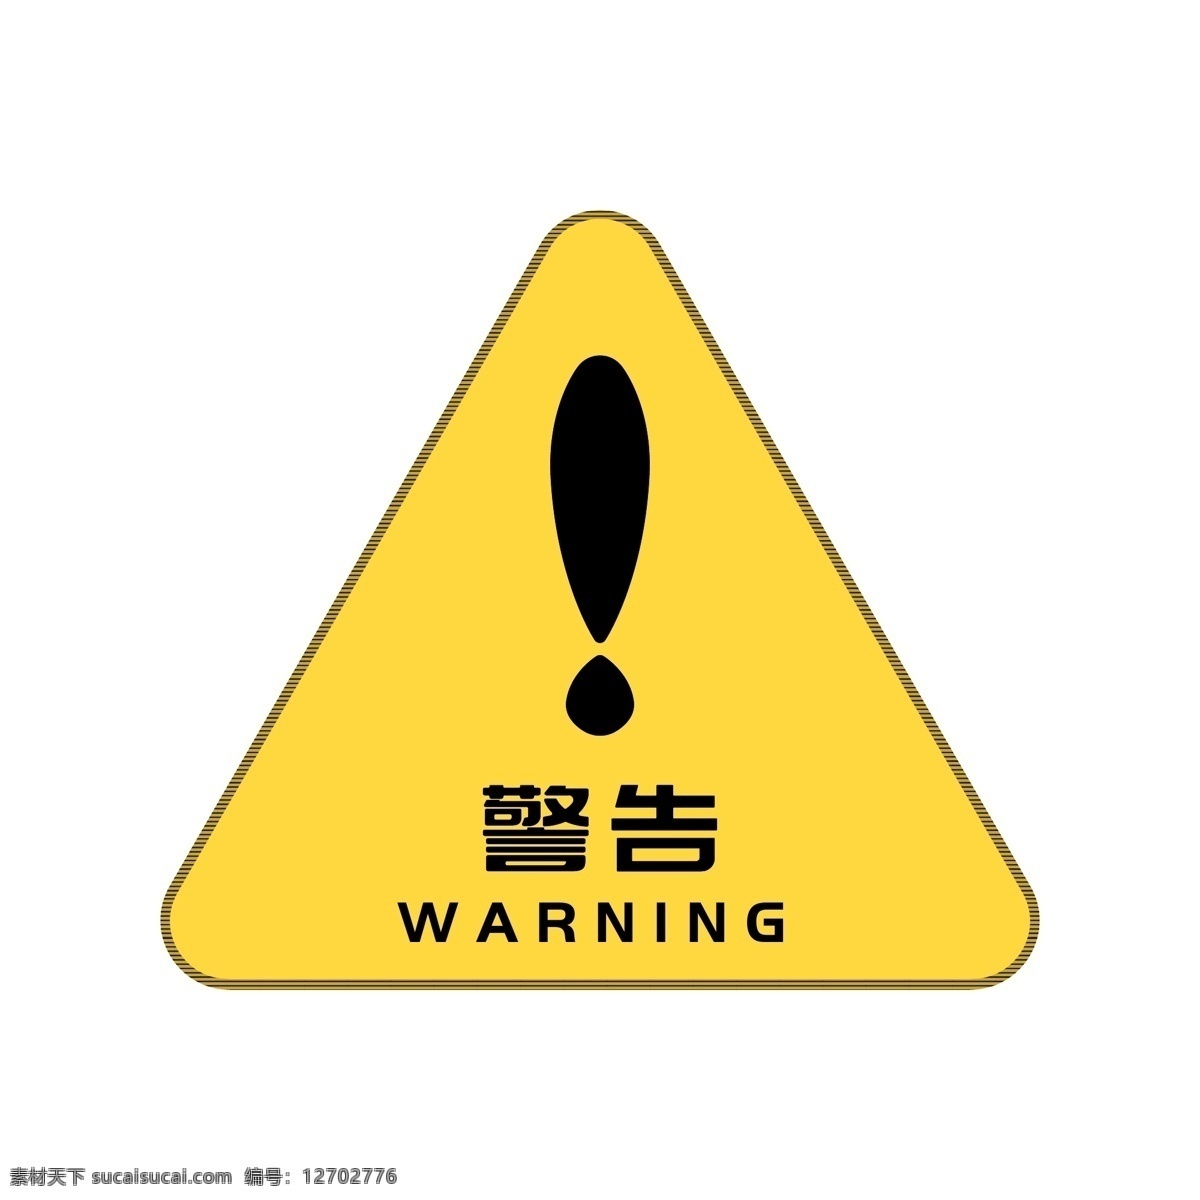 矢量 温馨 提示 公共 场合 标语 警告 黄色 警示 牌子 温馨提示 公共场合 黄色警示